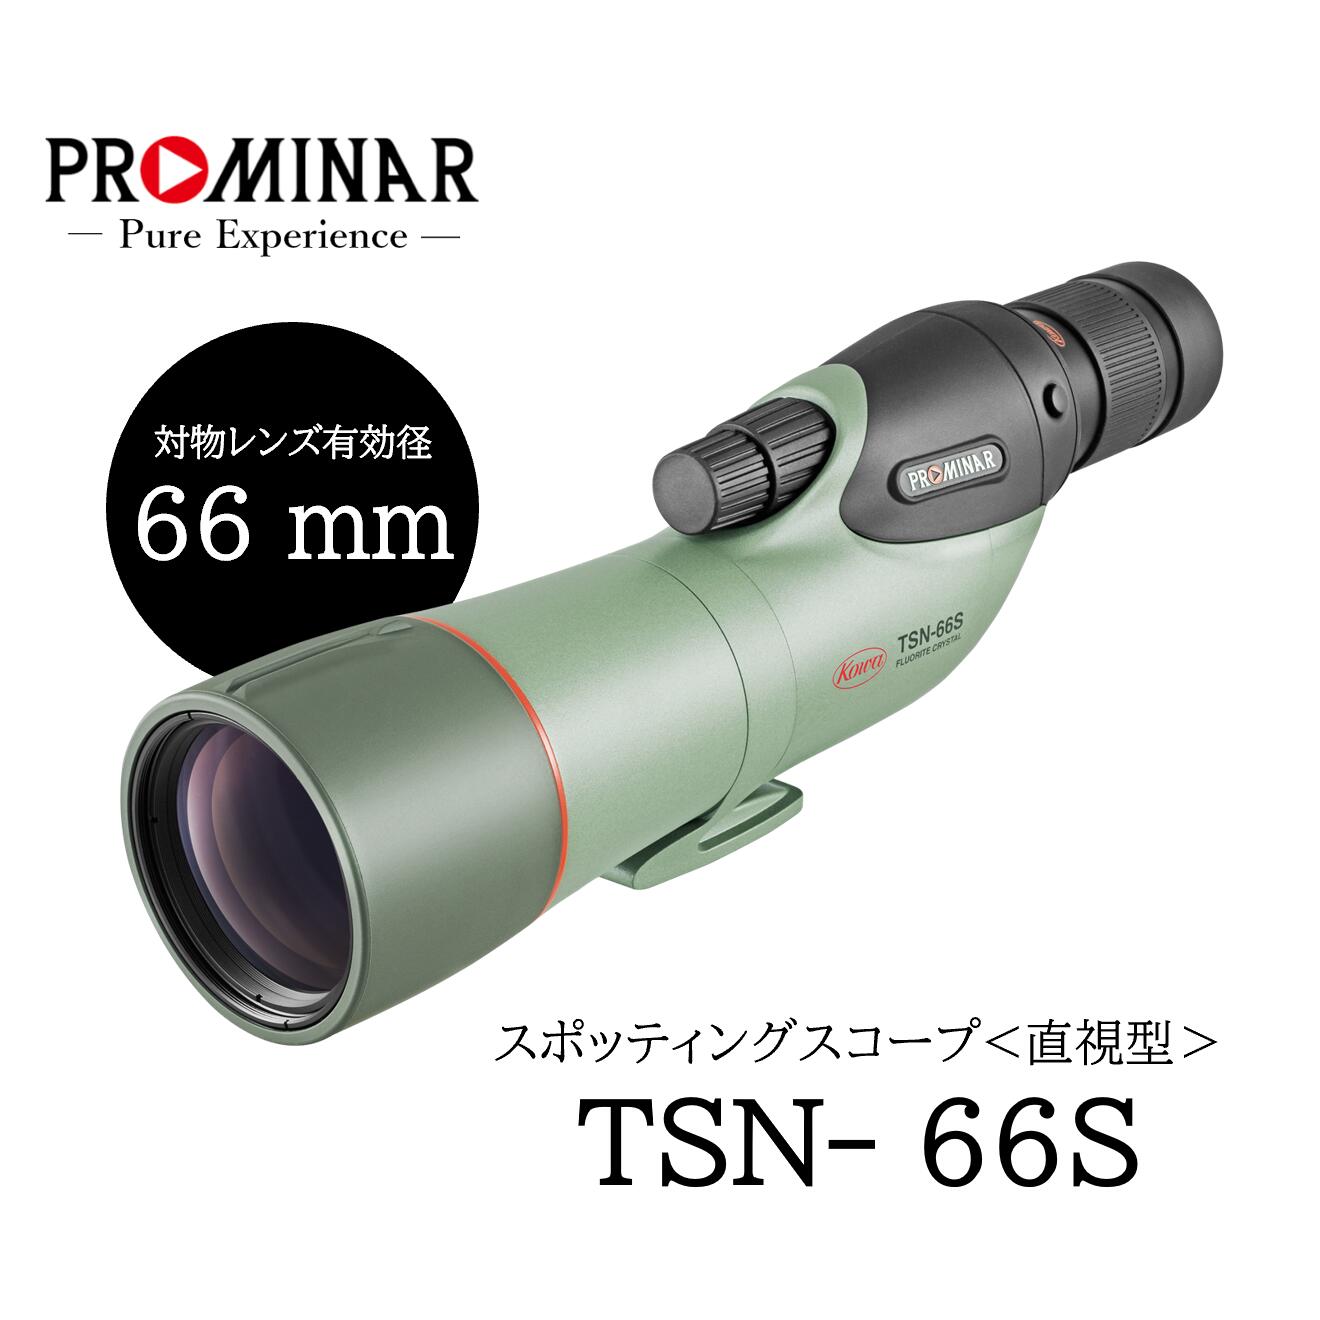 スポッティングスコープ TSN-66S PROMINAR〈直視型〉 ※アイピース別売り